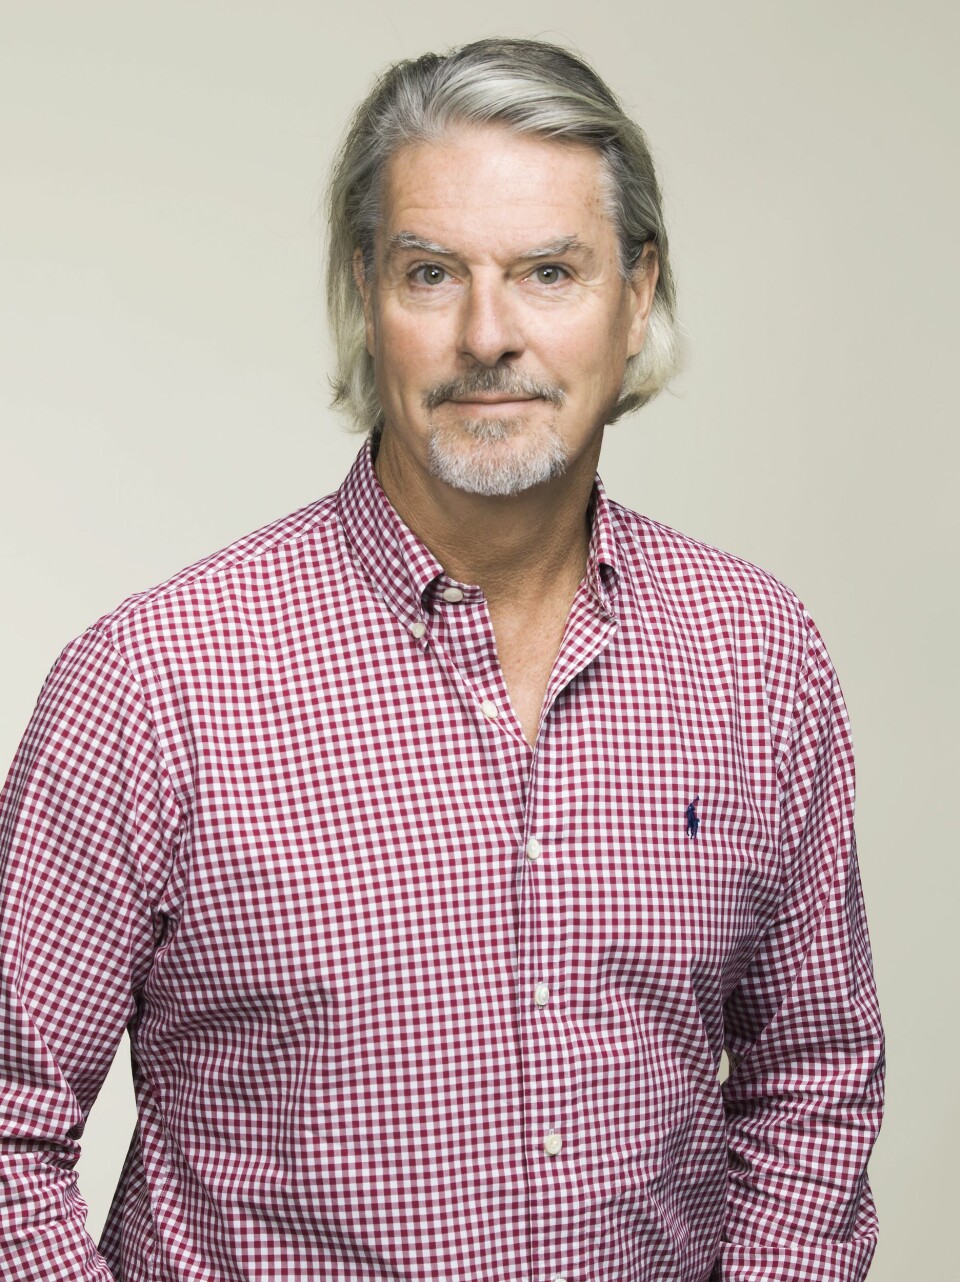 Administrerende direktør i MTG Norge, Morten Aass